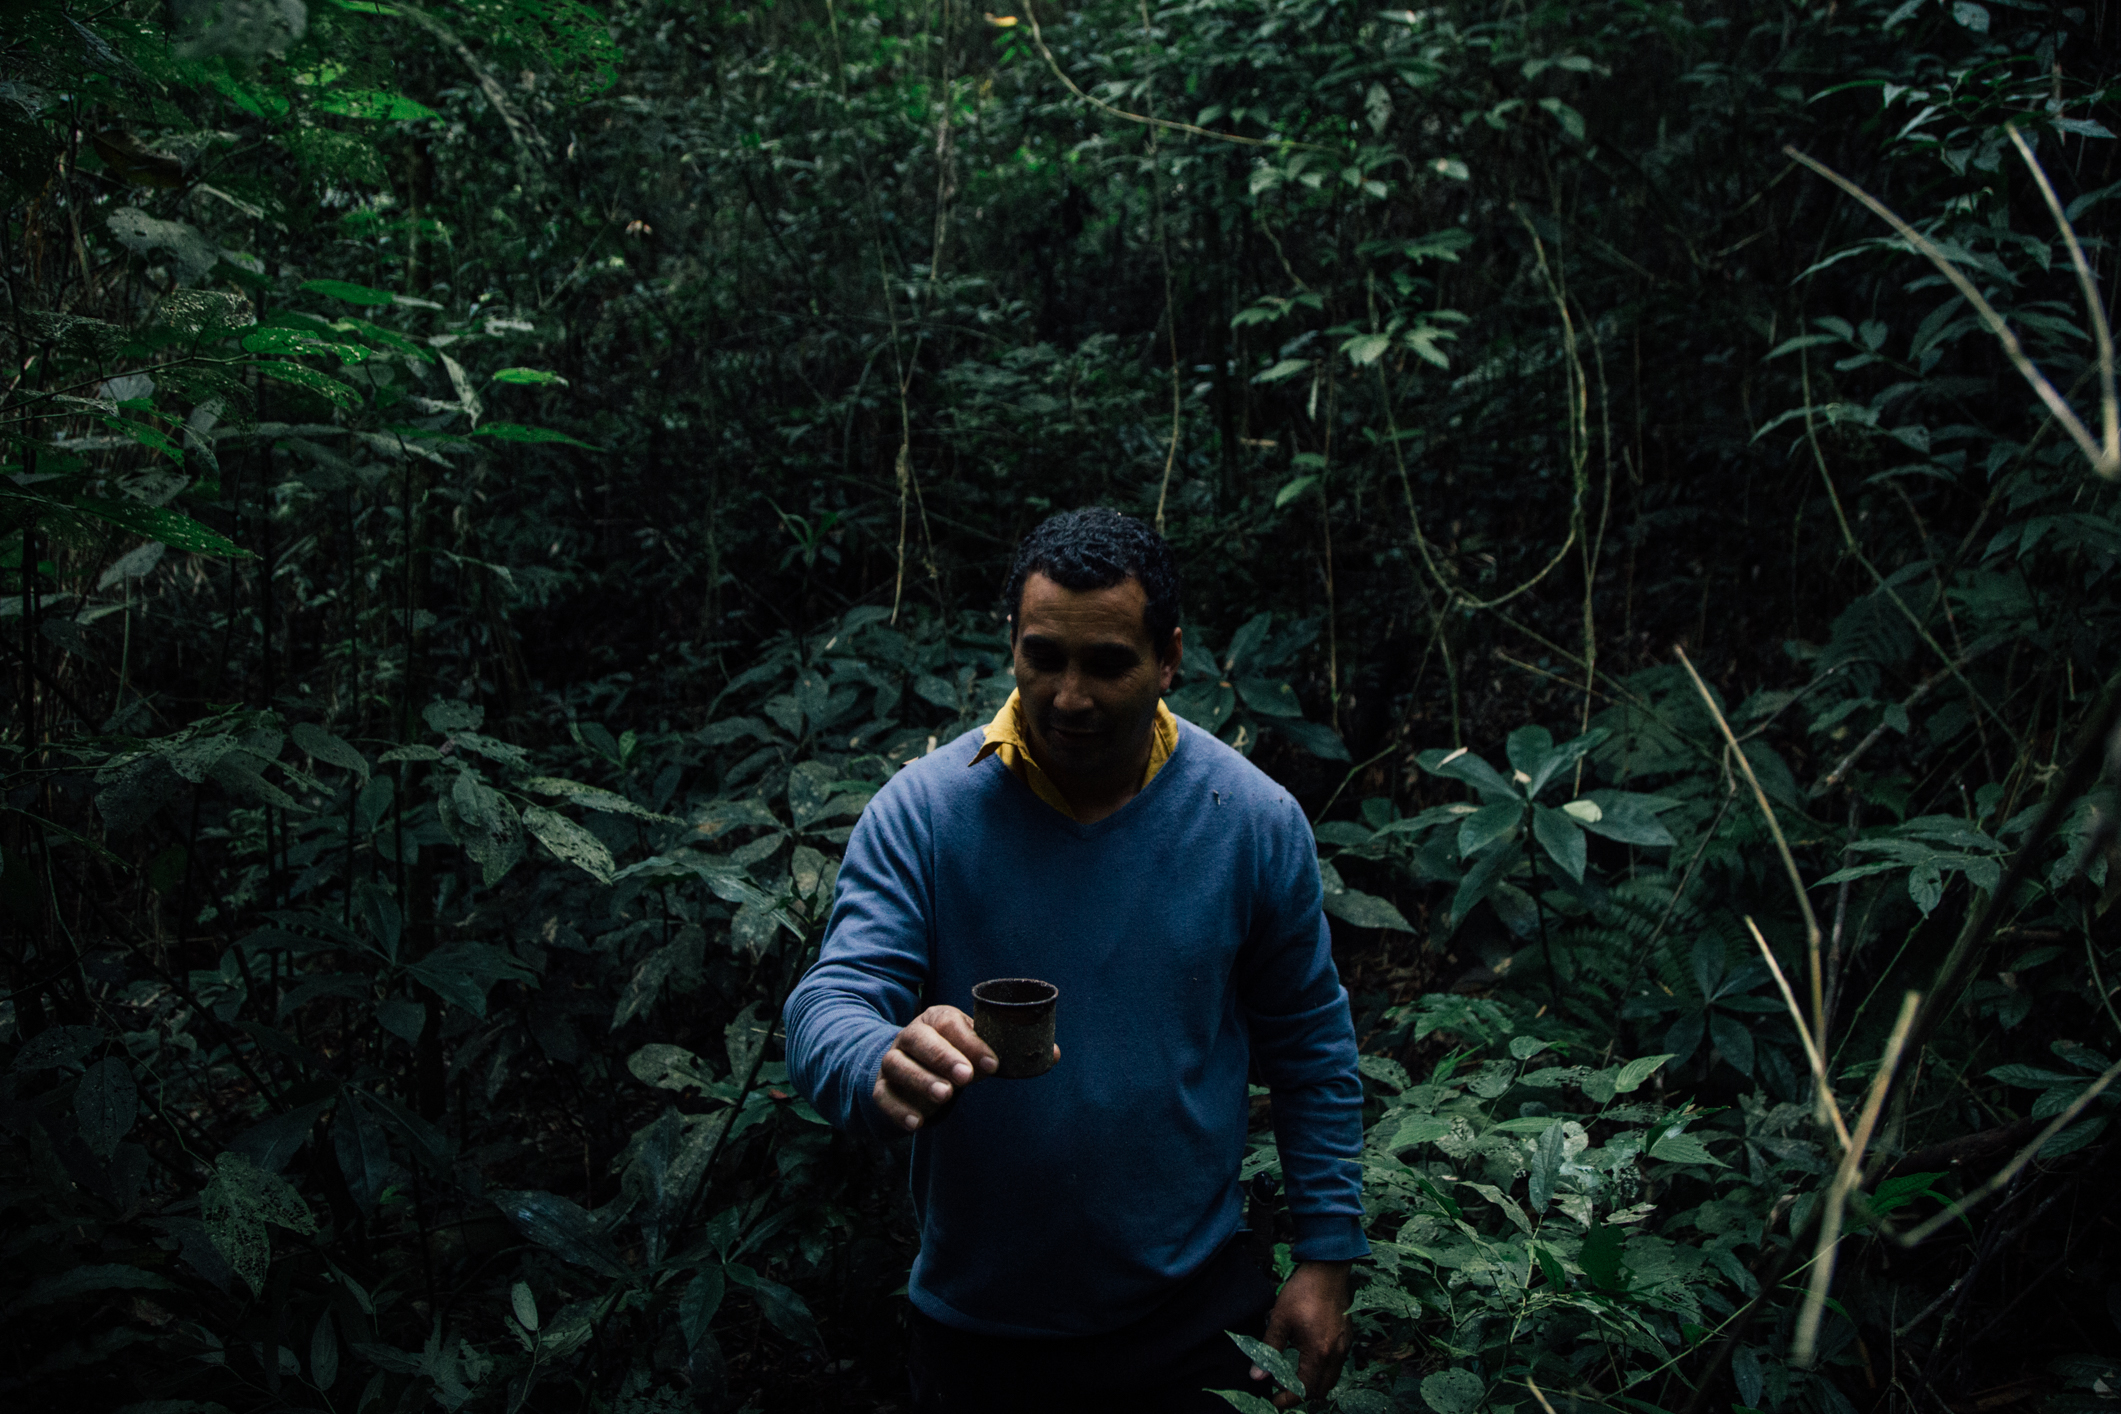 Edmilson conta história do quilombo com ferramentas preservadas na floresta|Júlio César Almeida/ISA